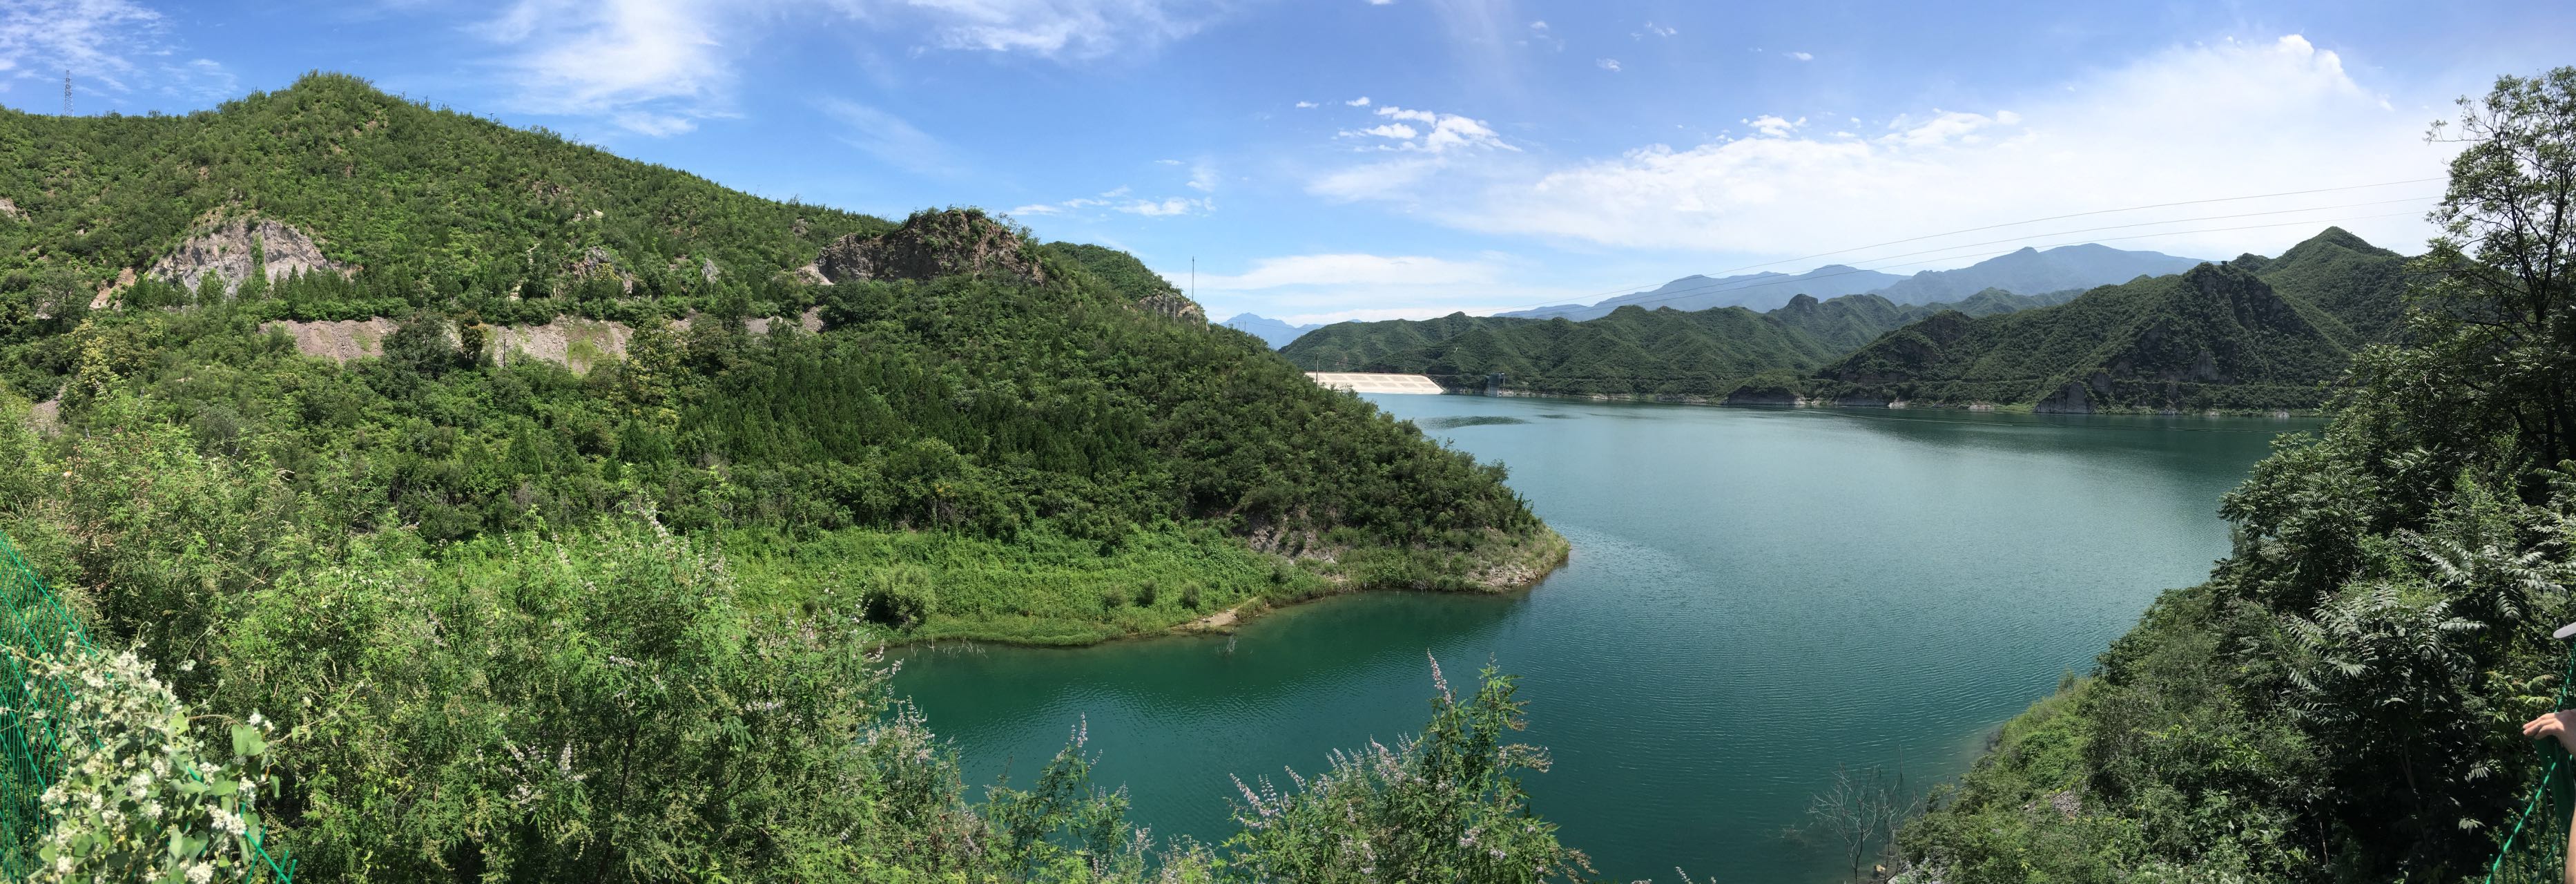 乐至县的三座中型水库 - 中国文化旅游网